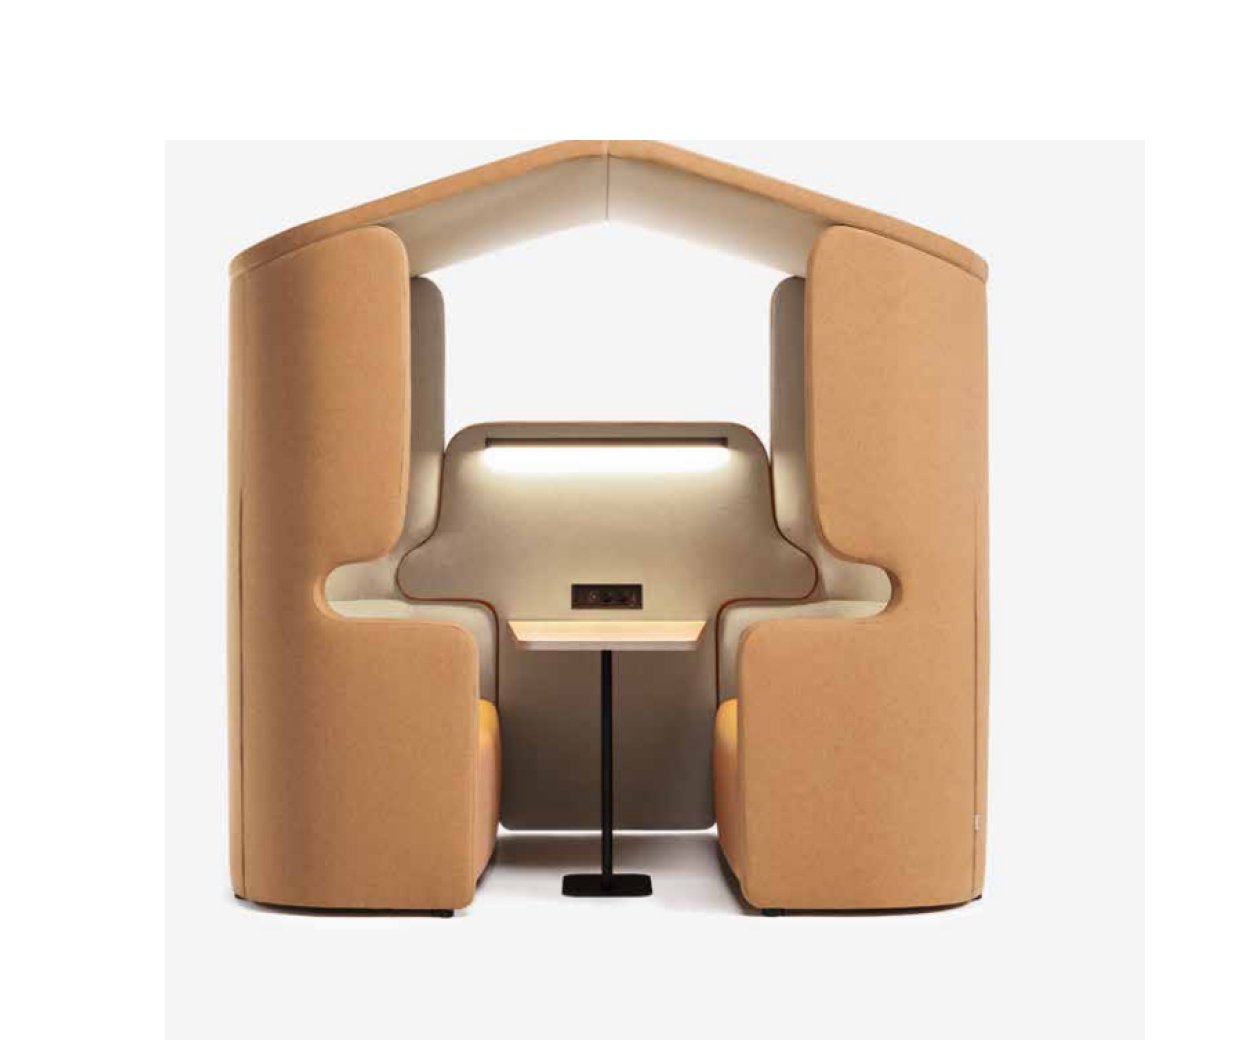 Cabine acoustique avec toit et éclairage pour espaces de co-working, espaces individuels ou de confidentialité.